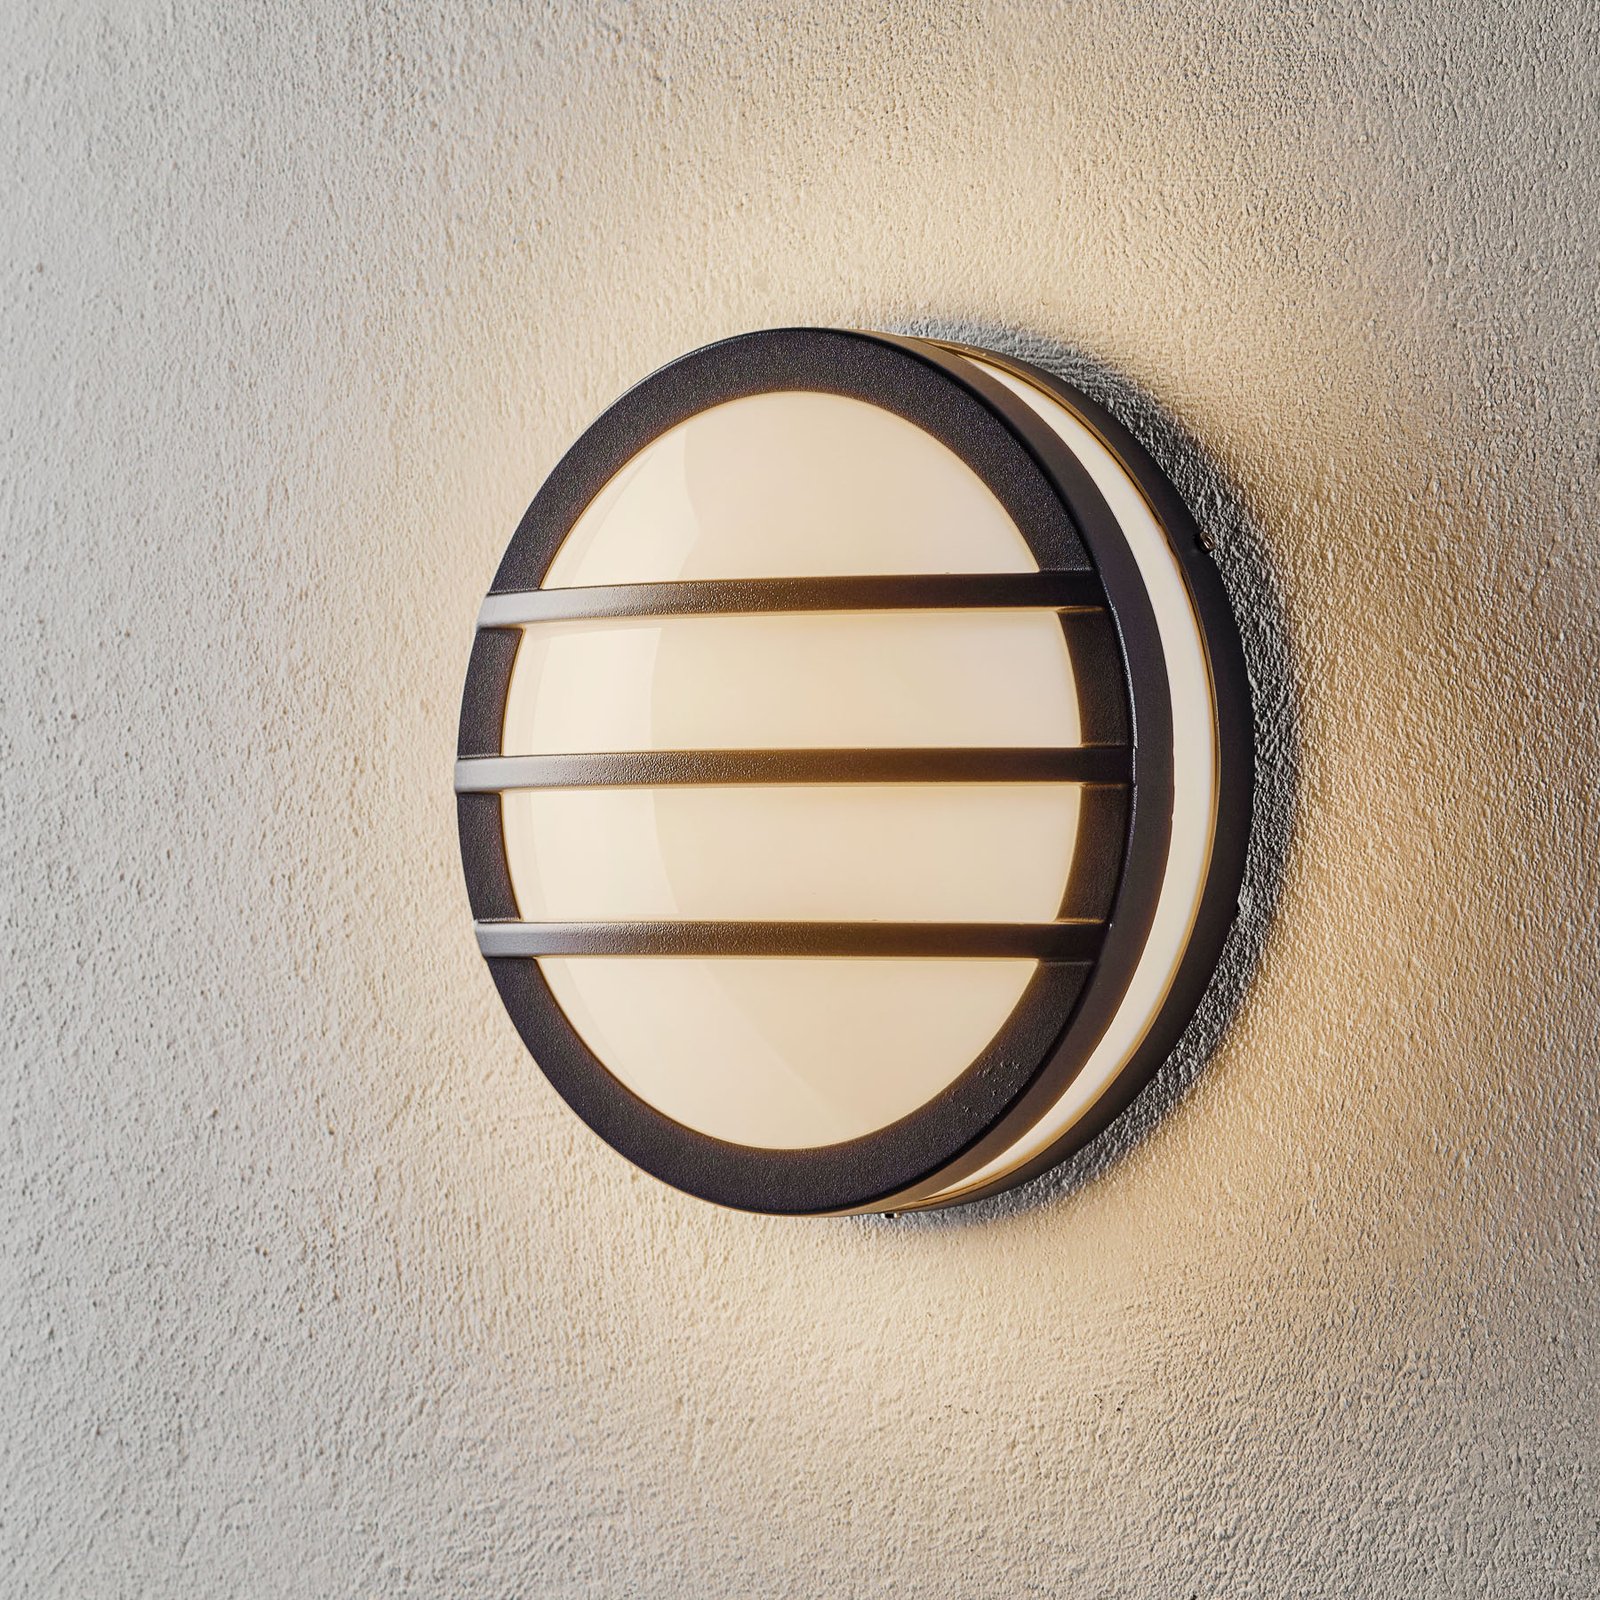 Round NANDIN exterior wall light